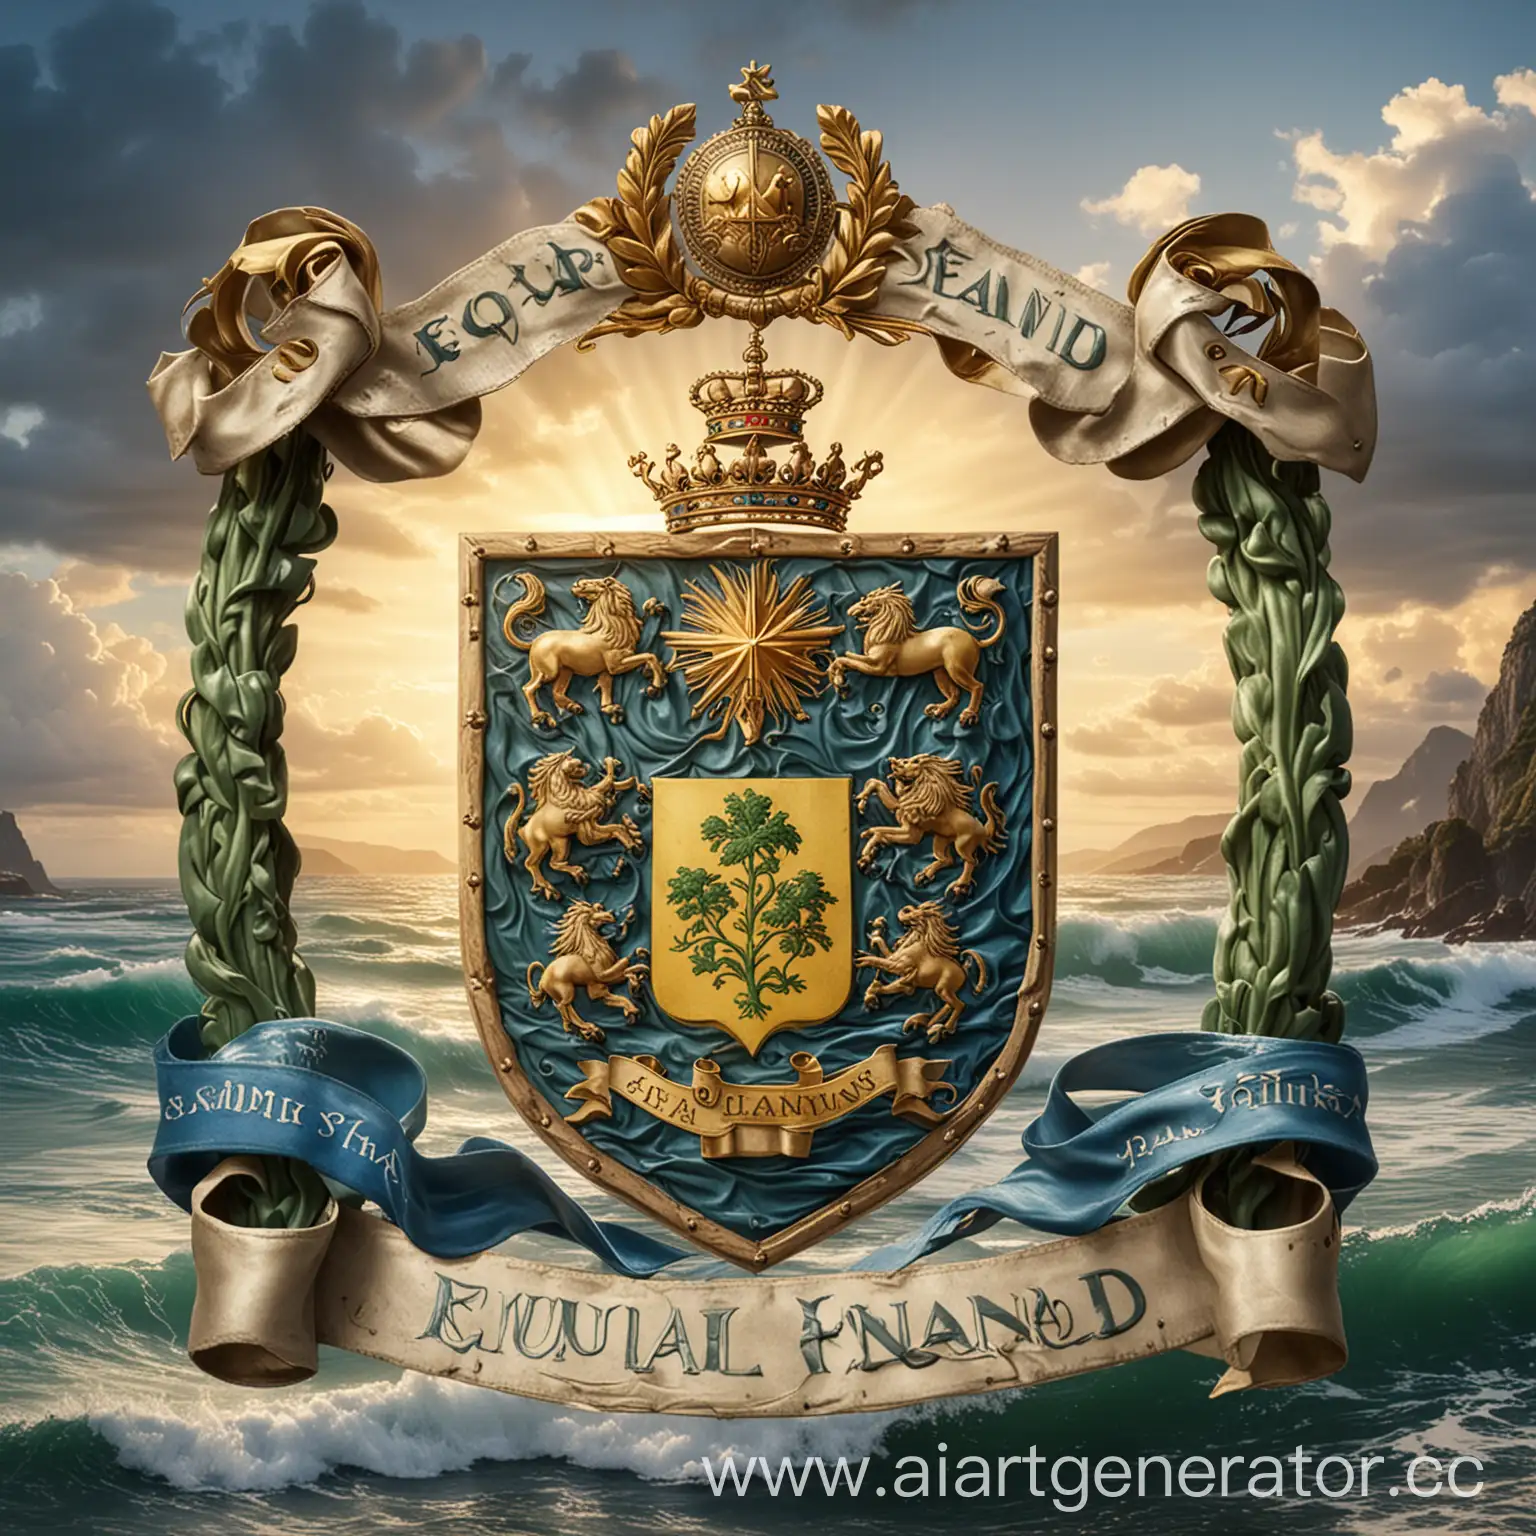  Герб Эквиландии изображает зеленый остров, окруженный голубыми волнами, на заднем плане восходит золотое солнце. Внизу герба находится лента с названием страны на эквилийском языке.